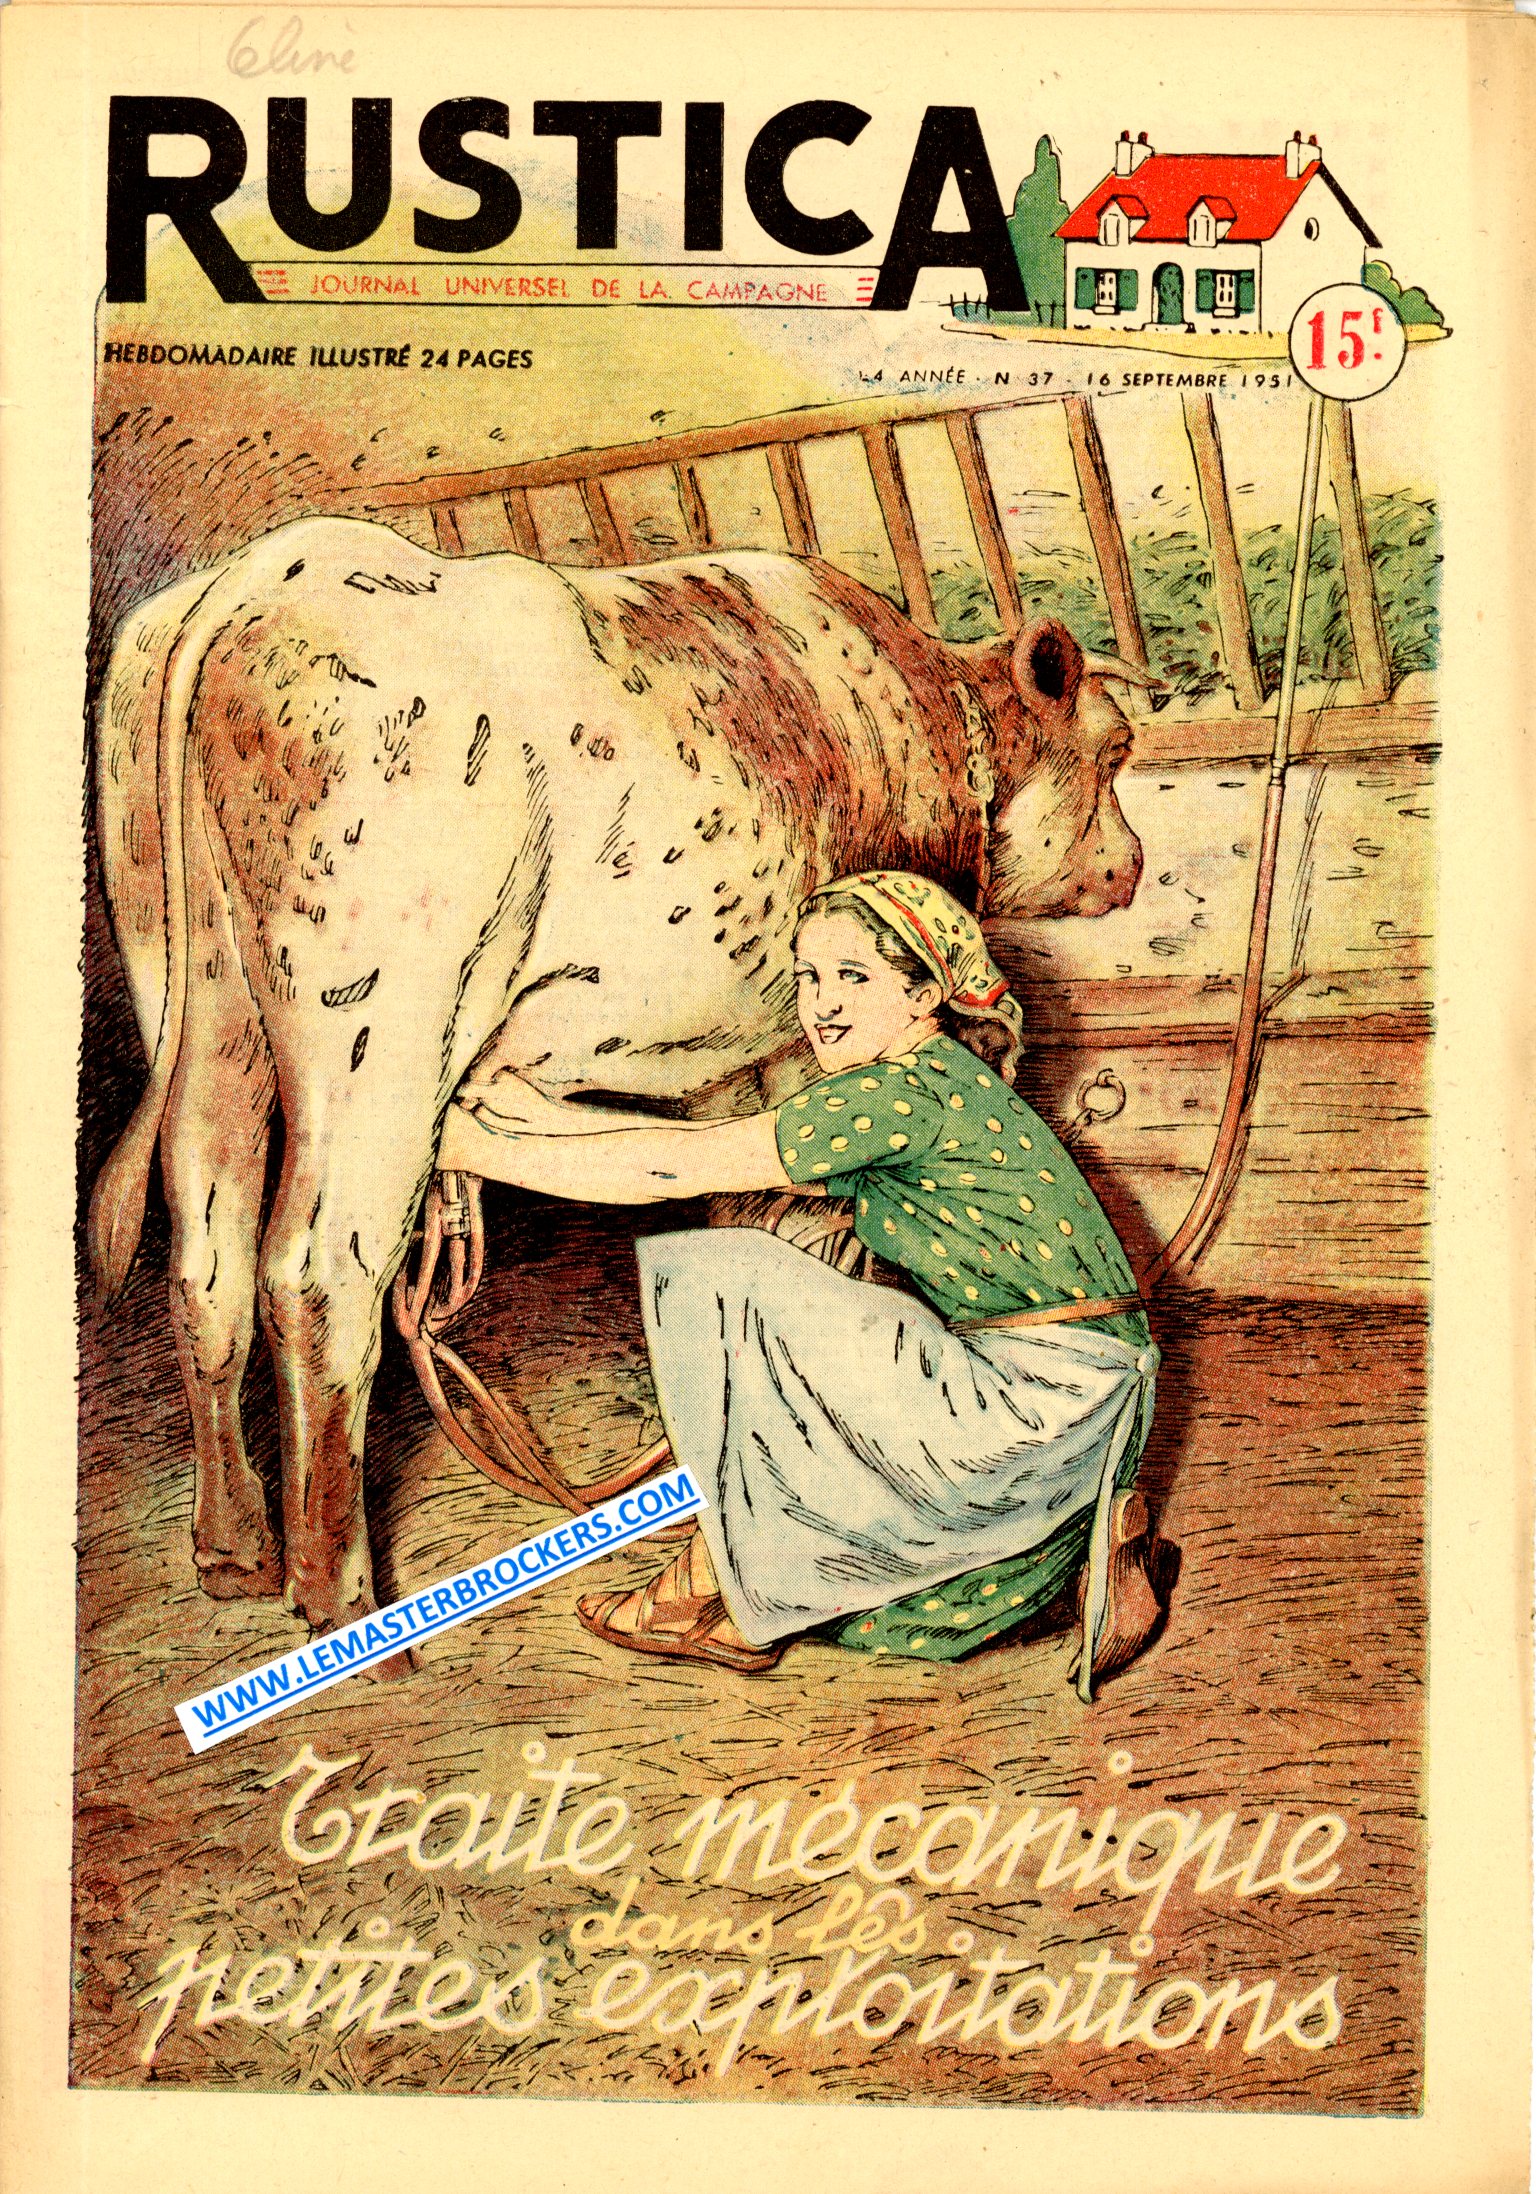 RUSTICA 37 DE 1951 - TRAITE MECANIQUE - MOUETTE GOELAND - BASSE-COUR FAMILIALE